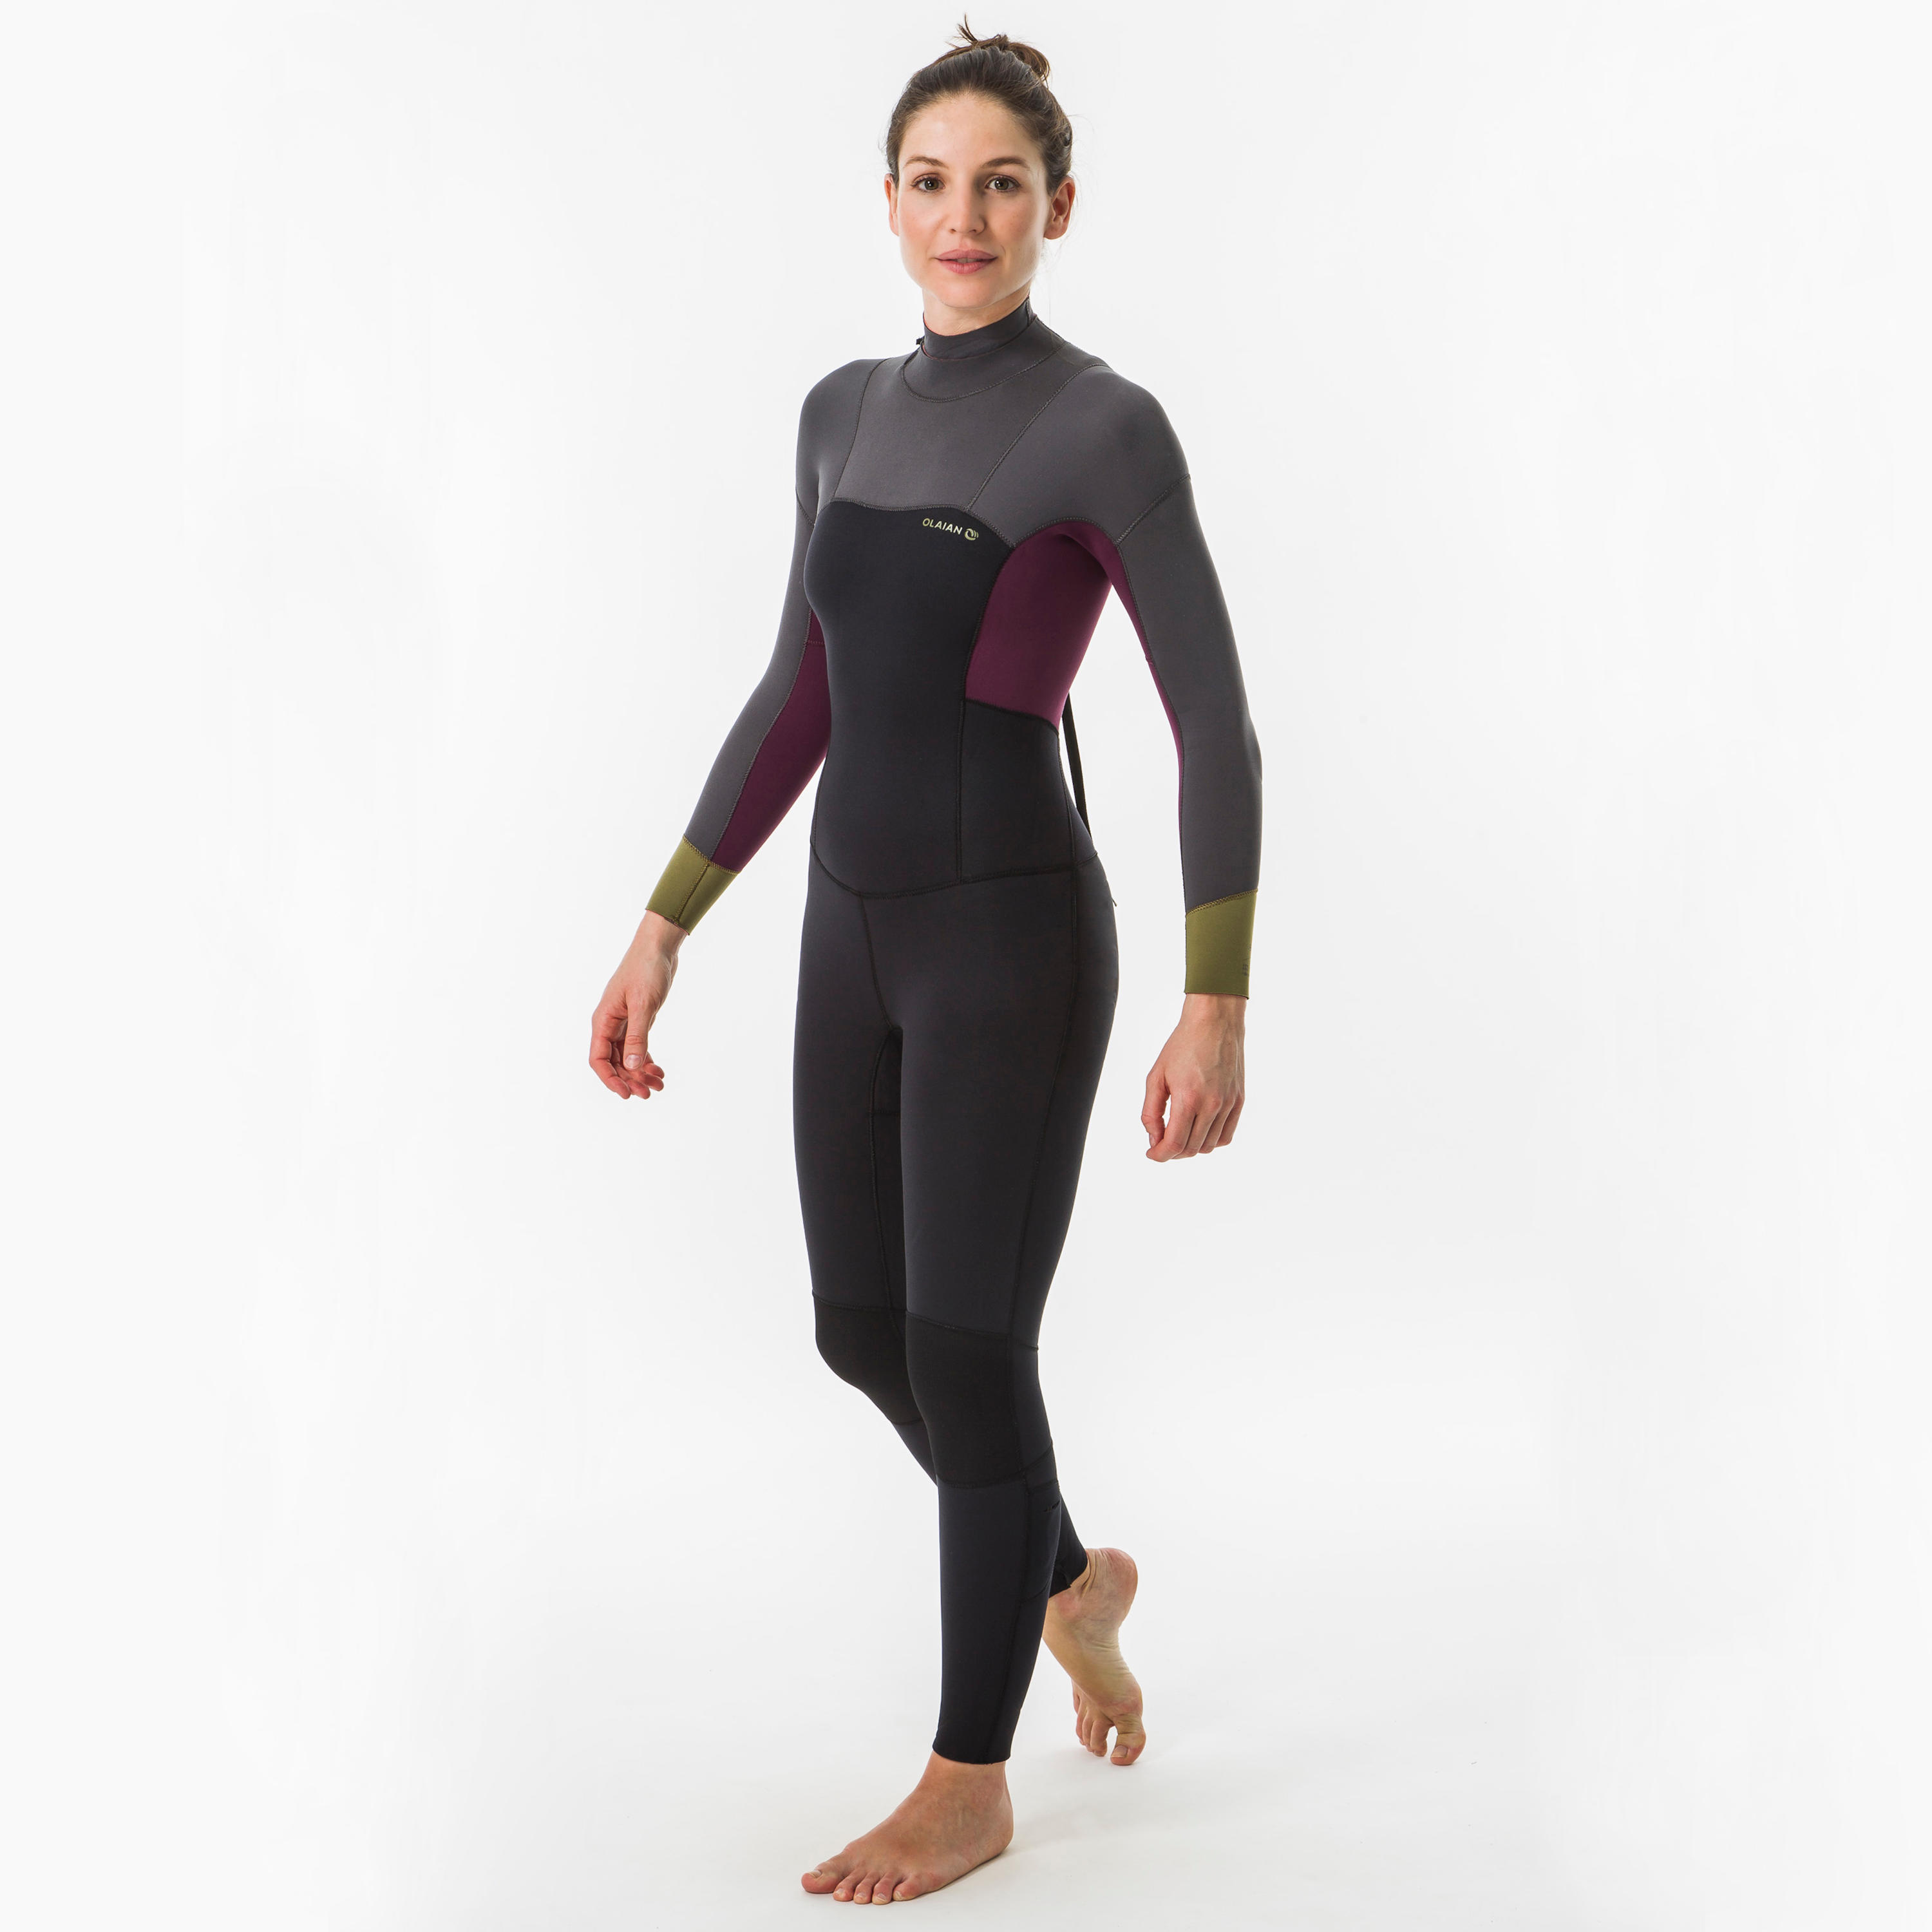 Women's full wetsuit 4/3,500 back zip 